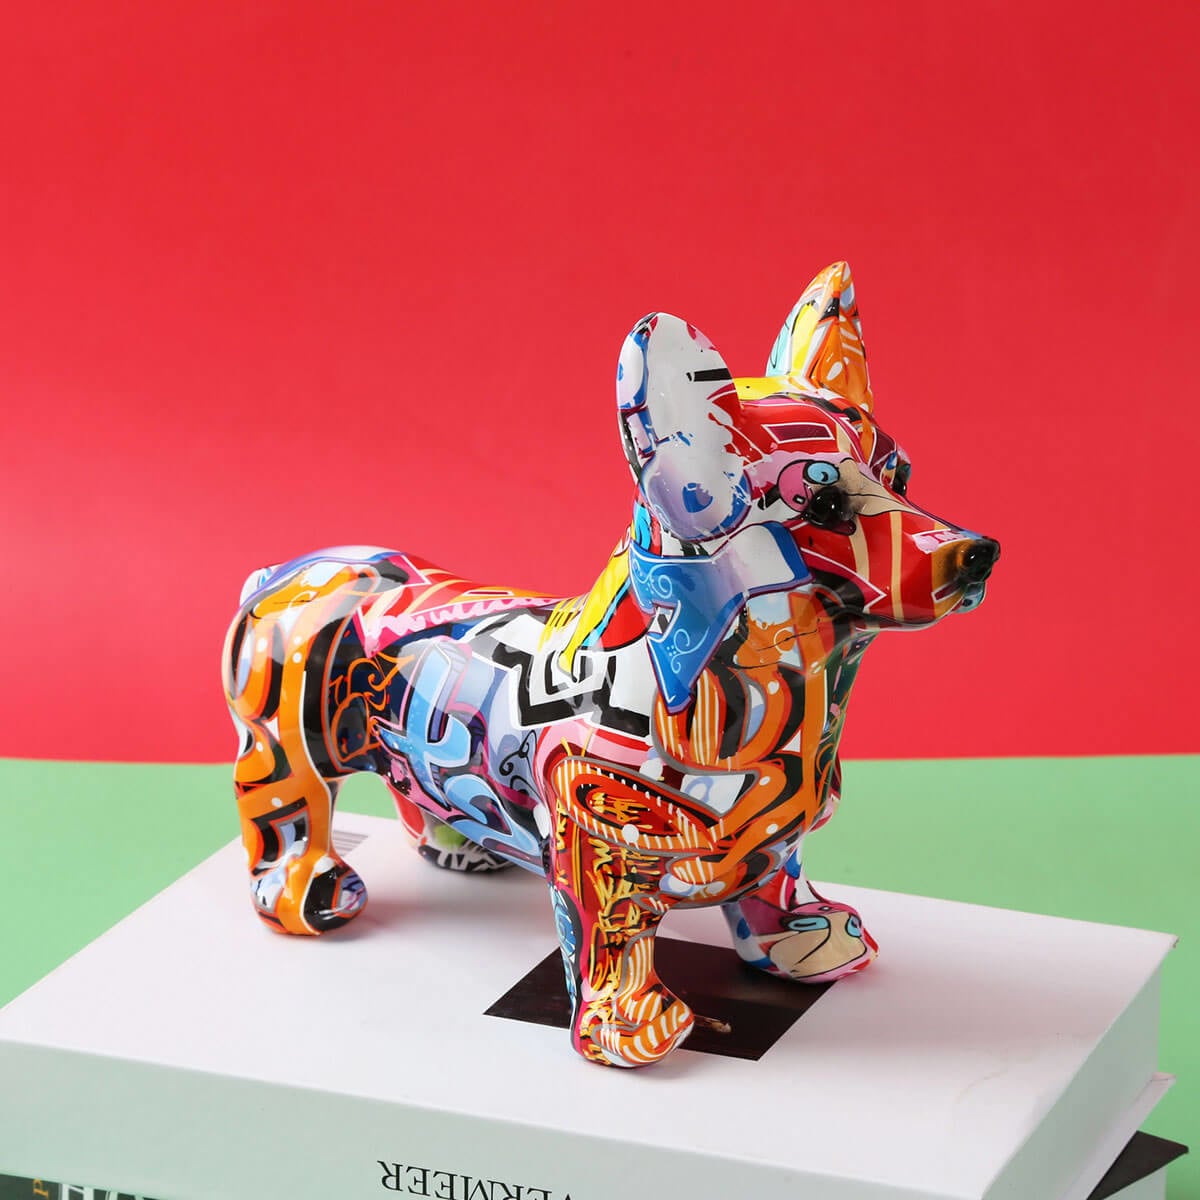 Statue de chien Corgi Sculpture d'art graffiti coloré